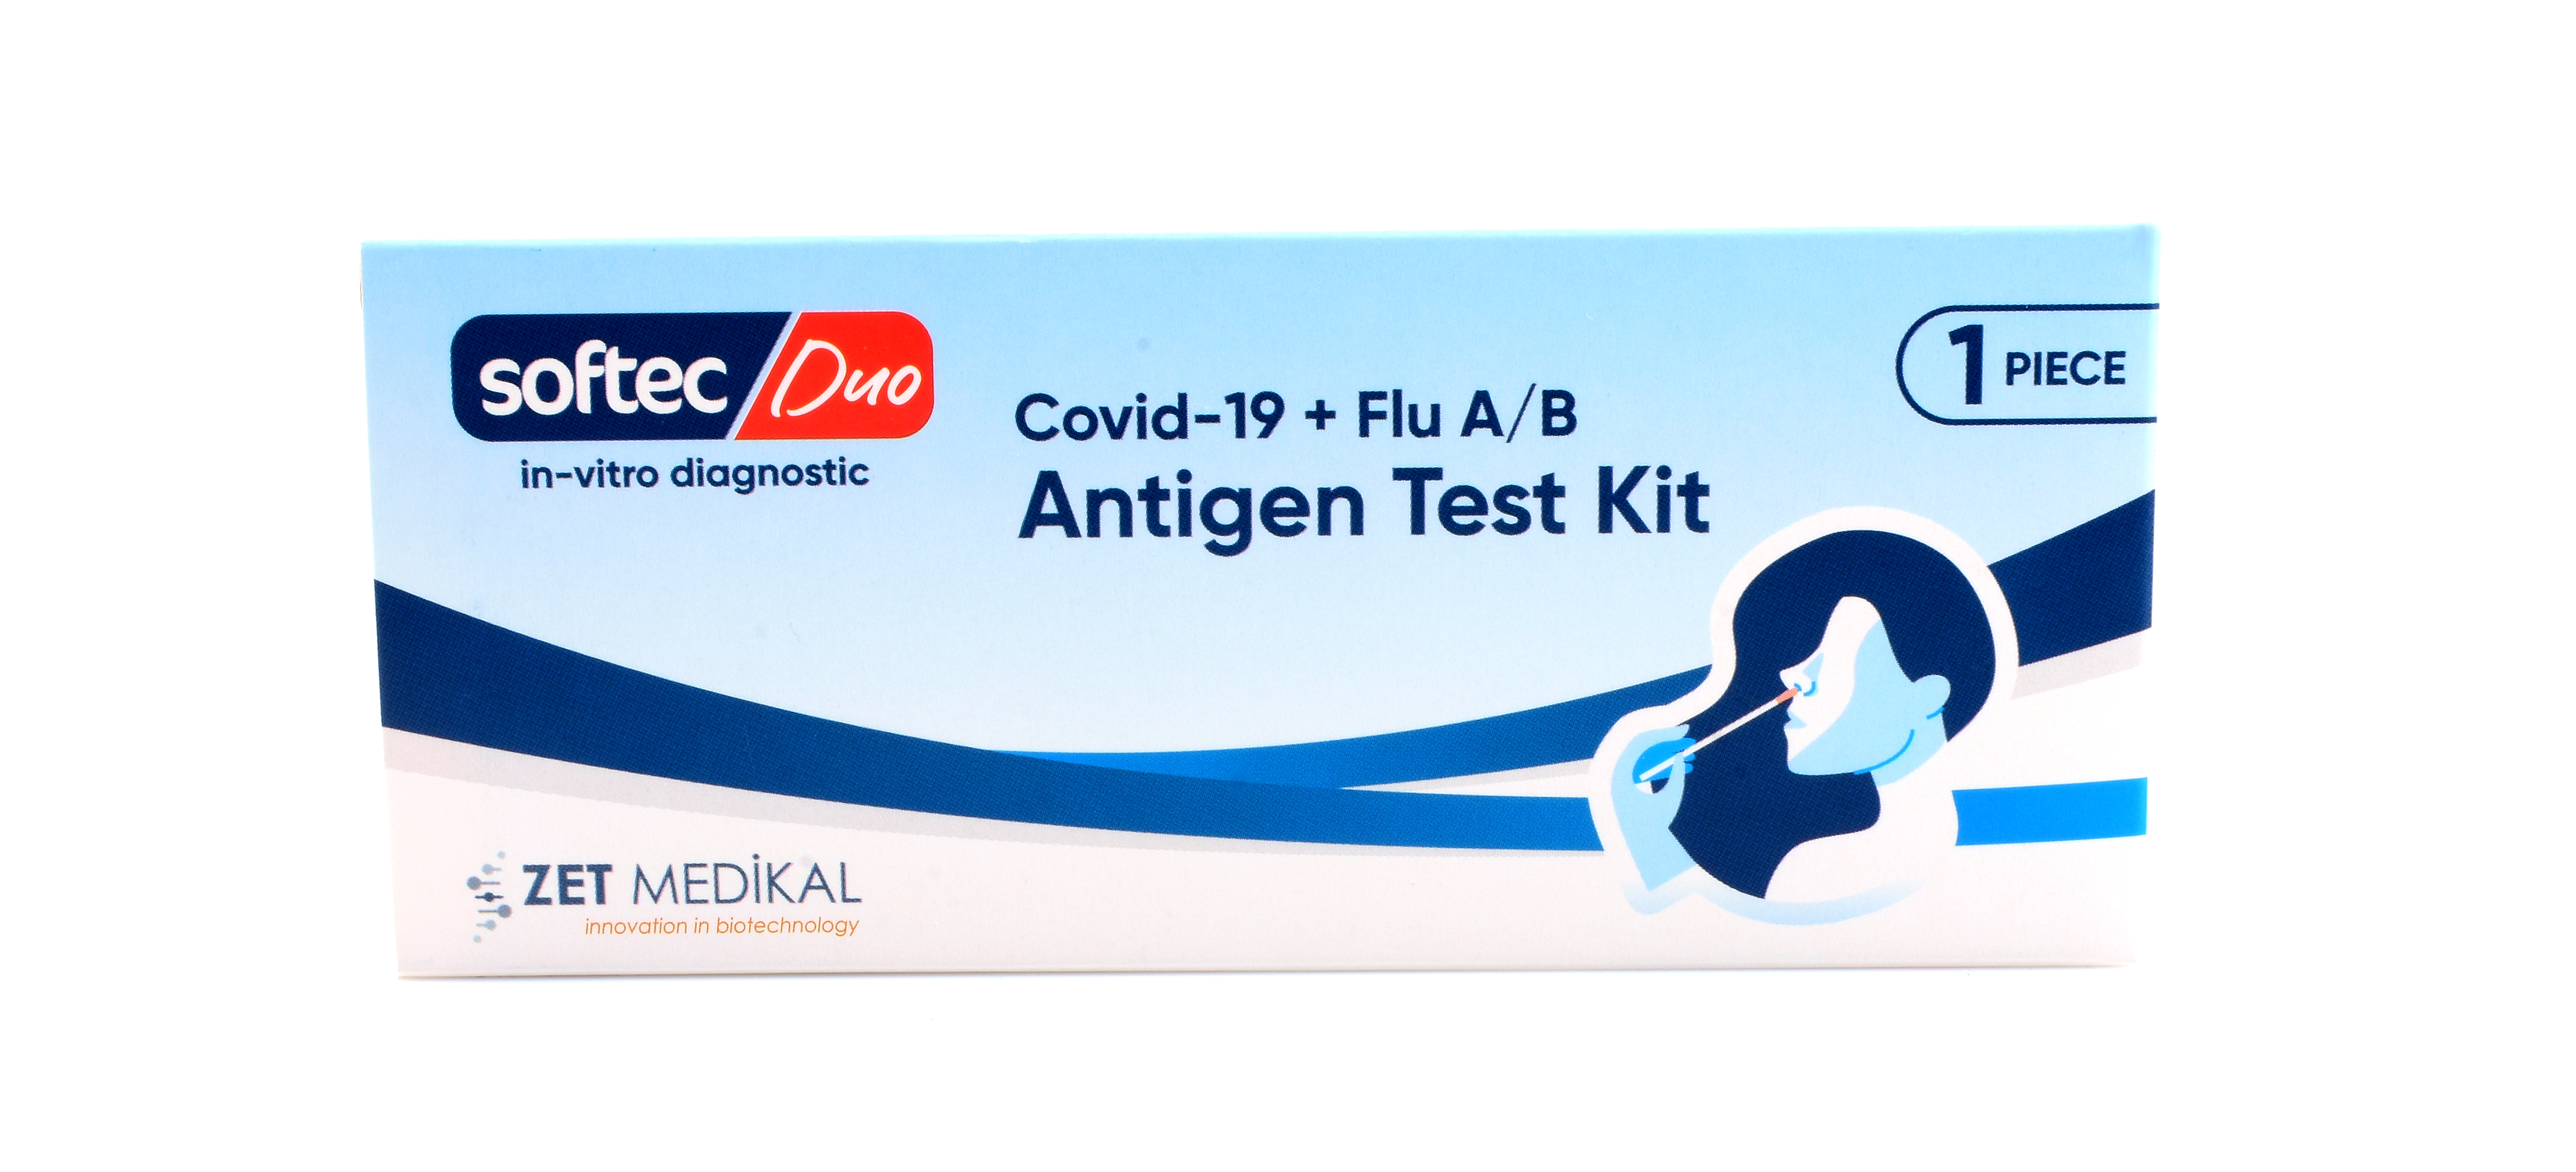 SOFTEC Duo Covid-19 + Flu A/B Test Kit 